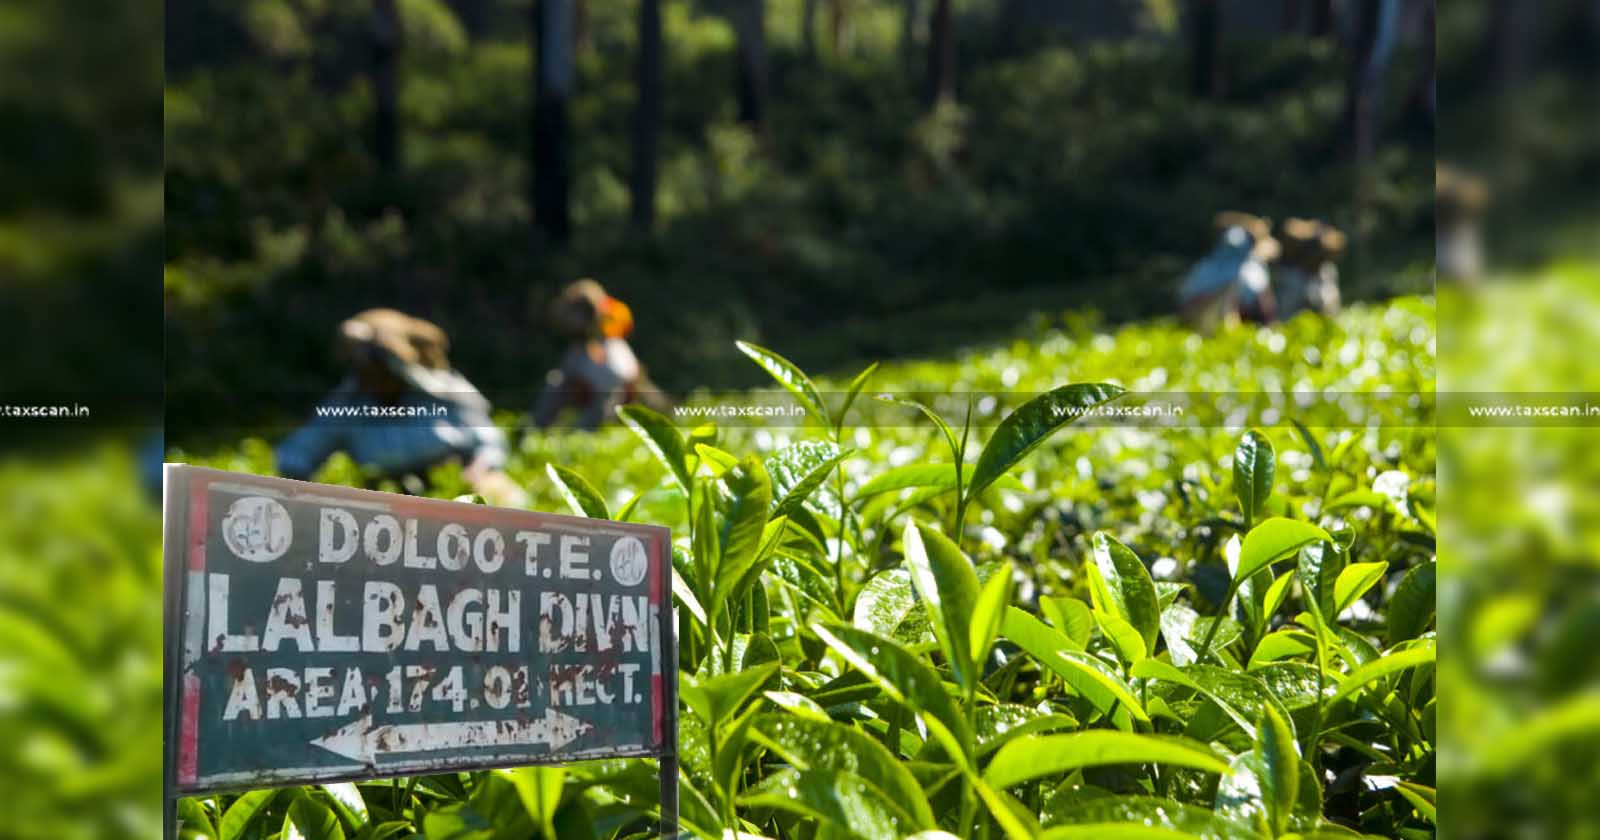 Doloo - Tea - Company - ITAT - Income - Tax - Addition - Taxing - Tea - bushes - Shade - Trees - TAXSCAN